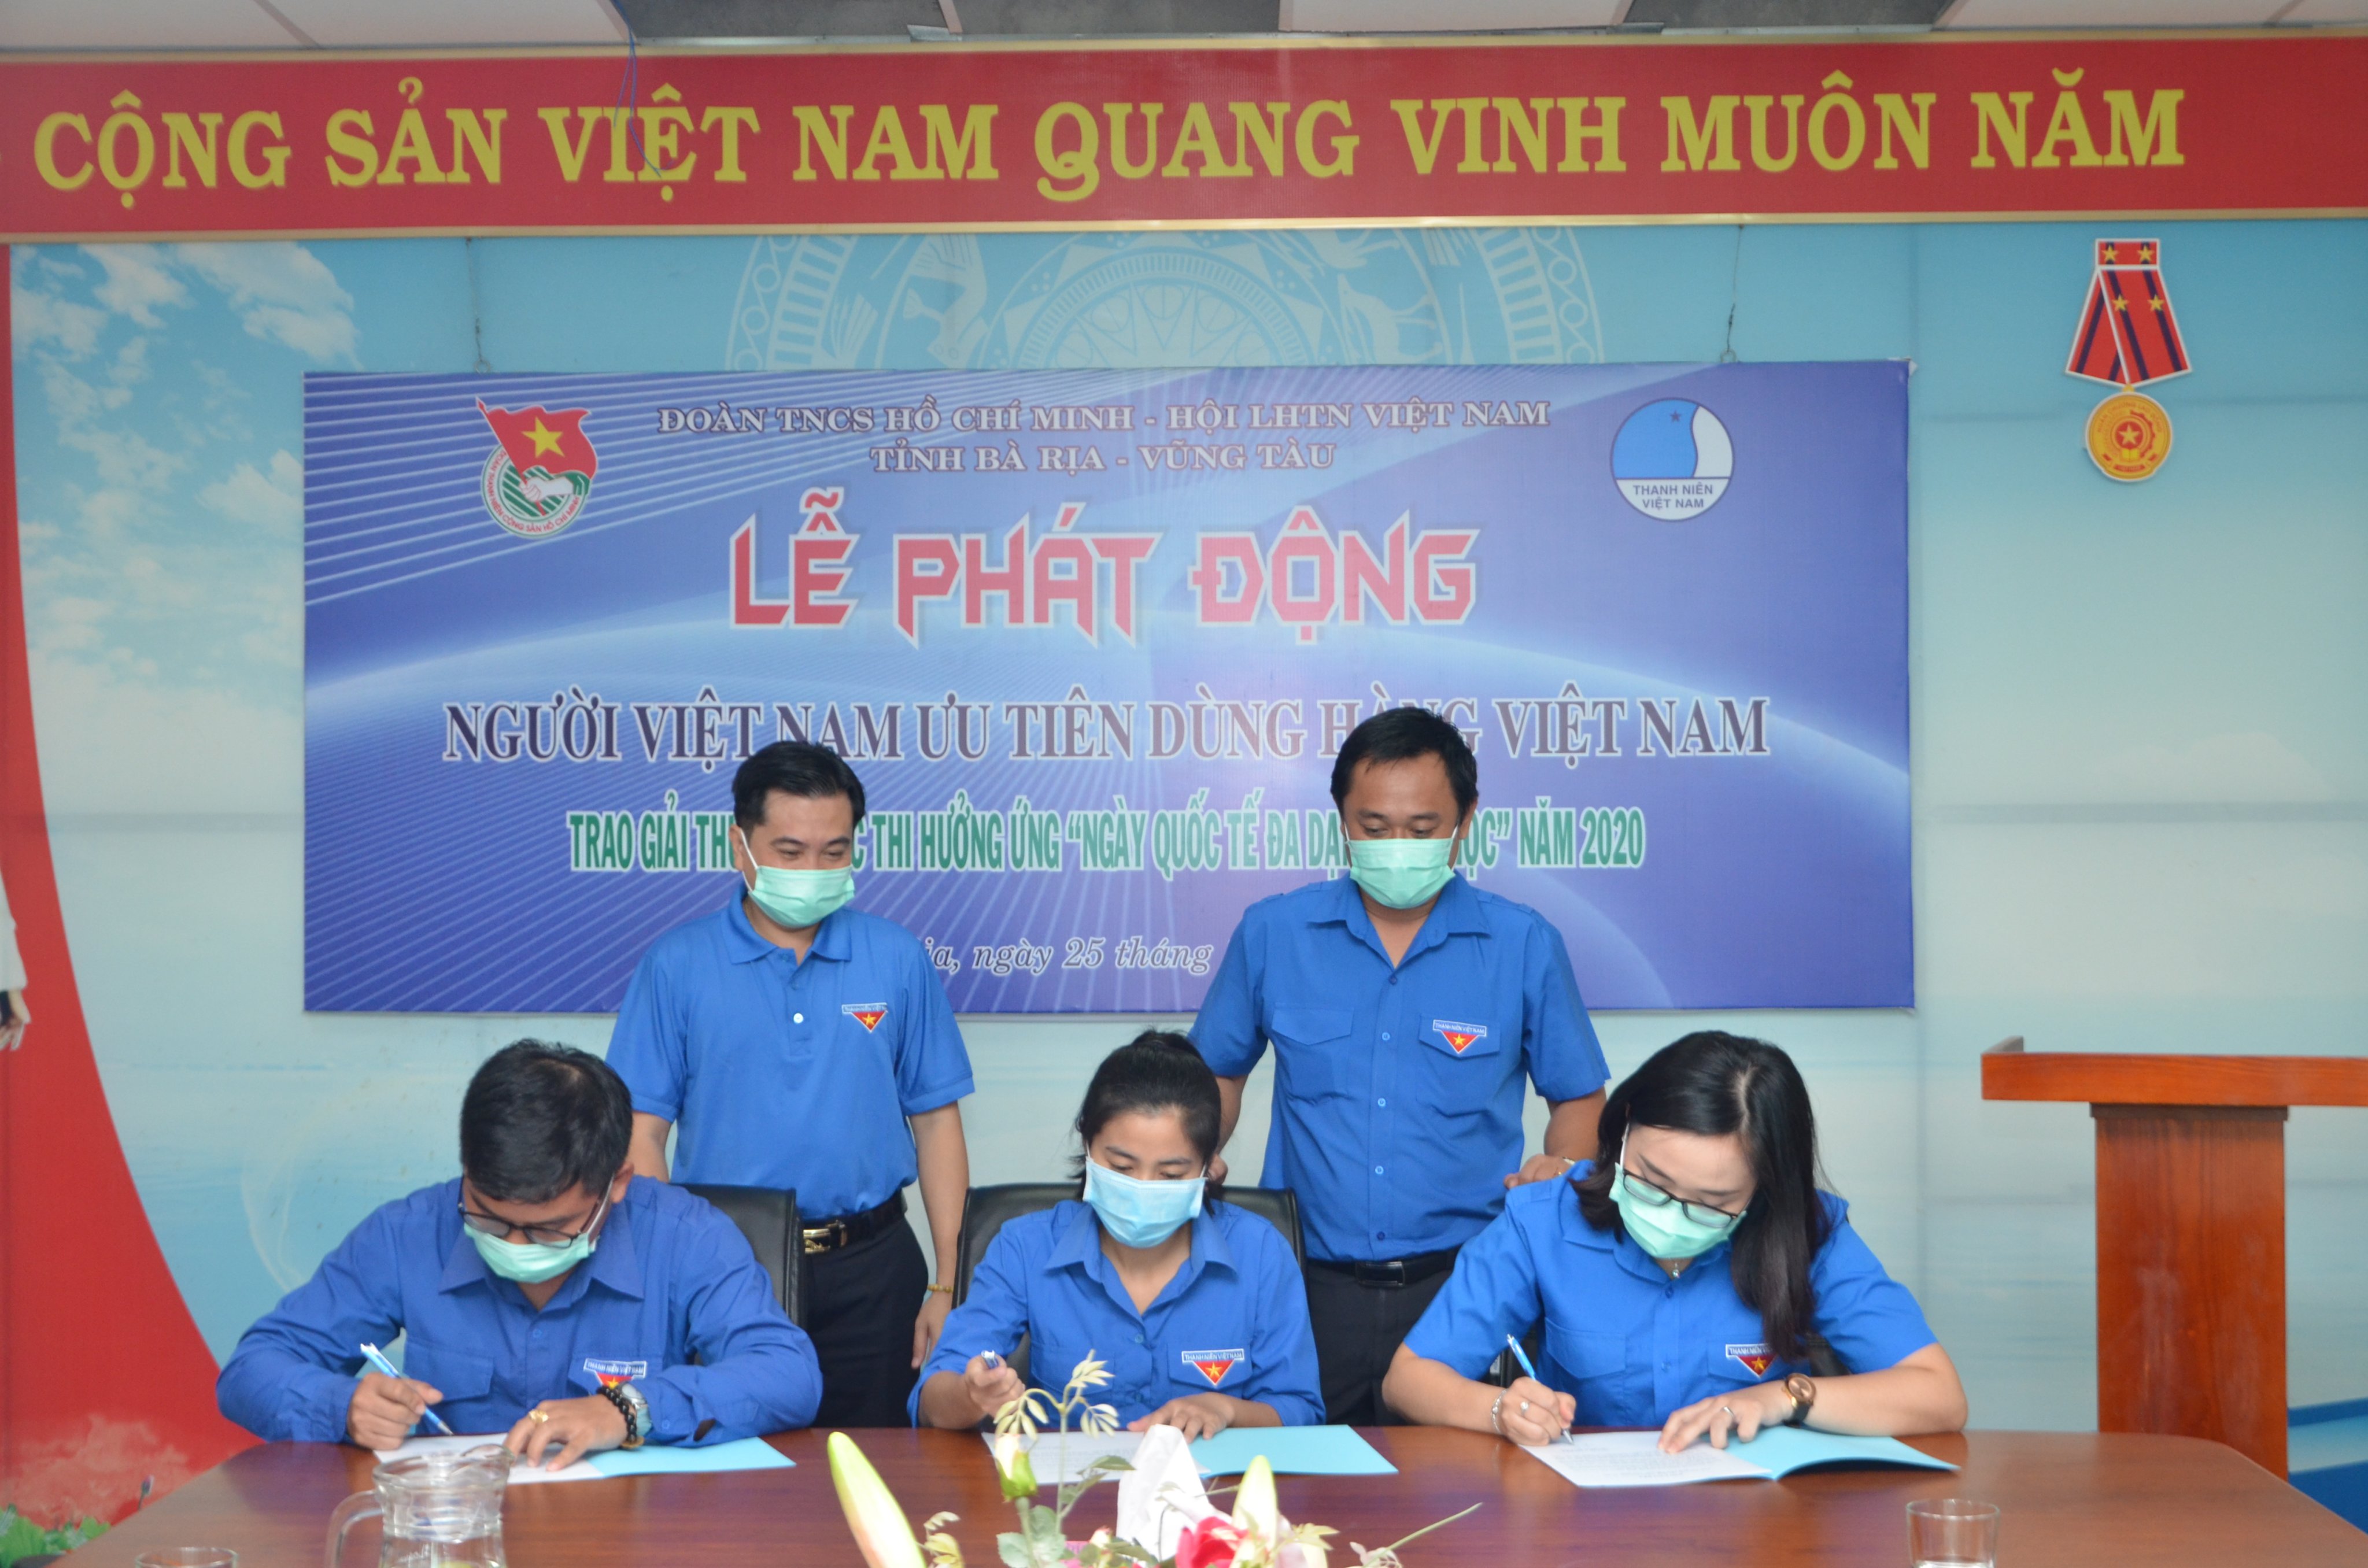 Đoàn thanh niên các huyện, thị xã, thành phố tham gia ký kết thực hiện Cuộc vận động “Người Việt Nam ưu tiên dùng hàng Việt Nam”.